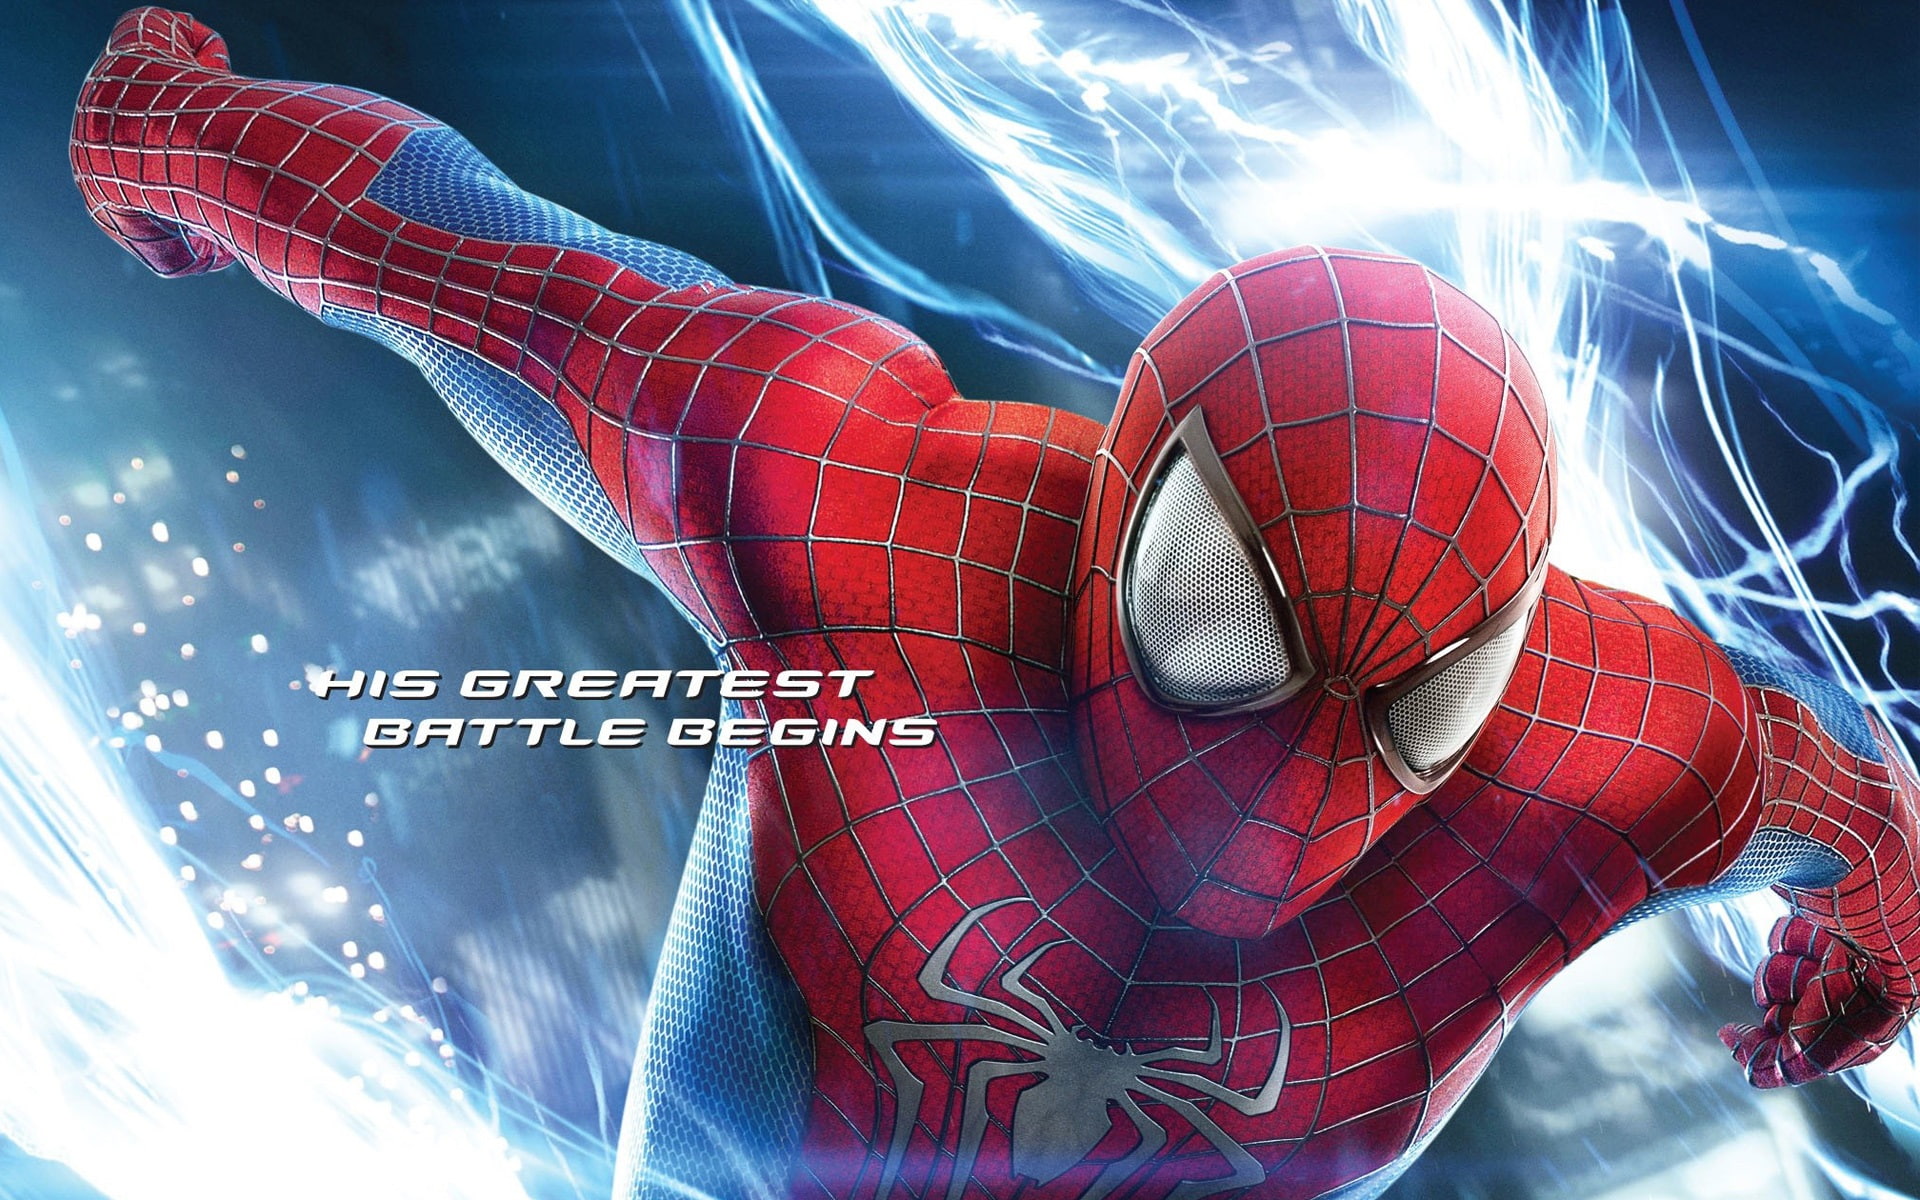 2014 The Amazing Spider-Man 2, spider-man photo